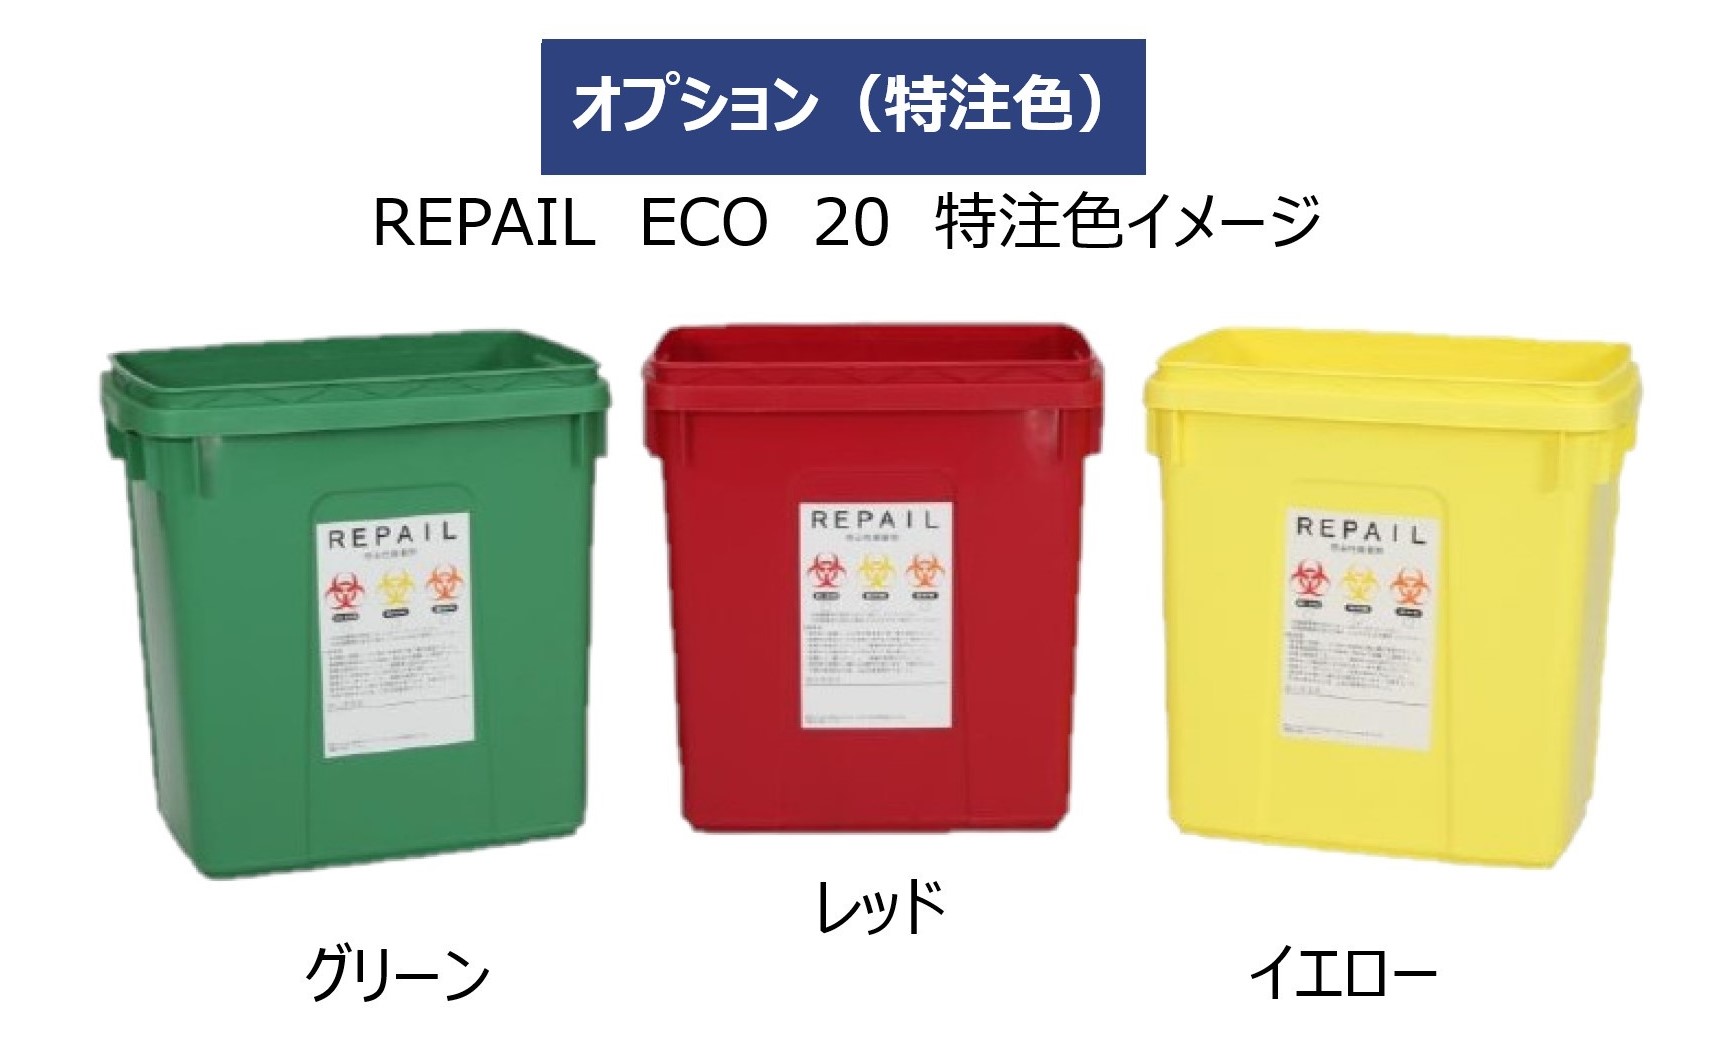 ■丸和ケミカル PETリサイクル手袋〔品番:533〕[店頭受取不可]